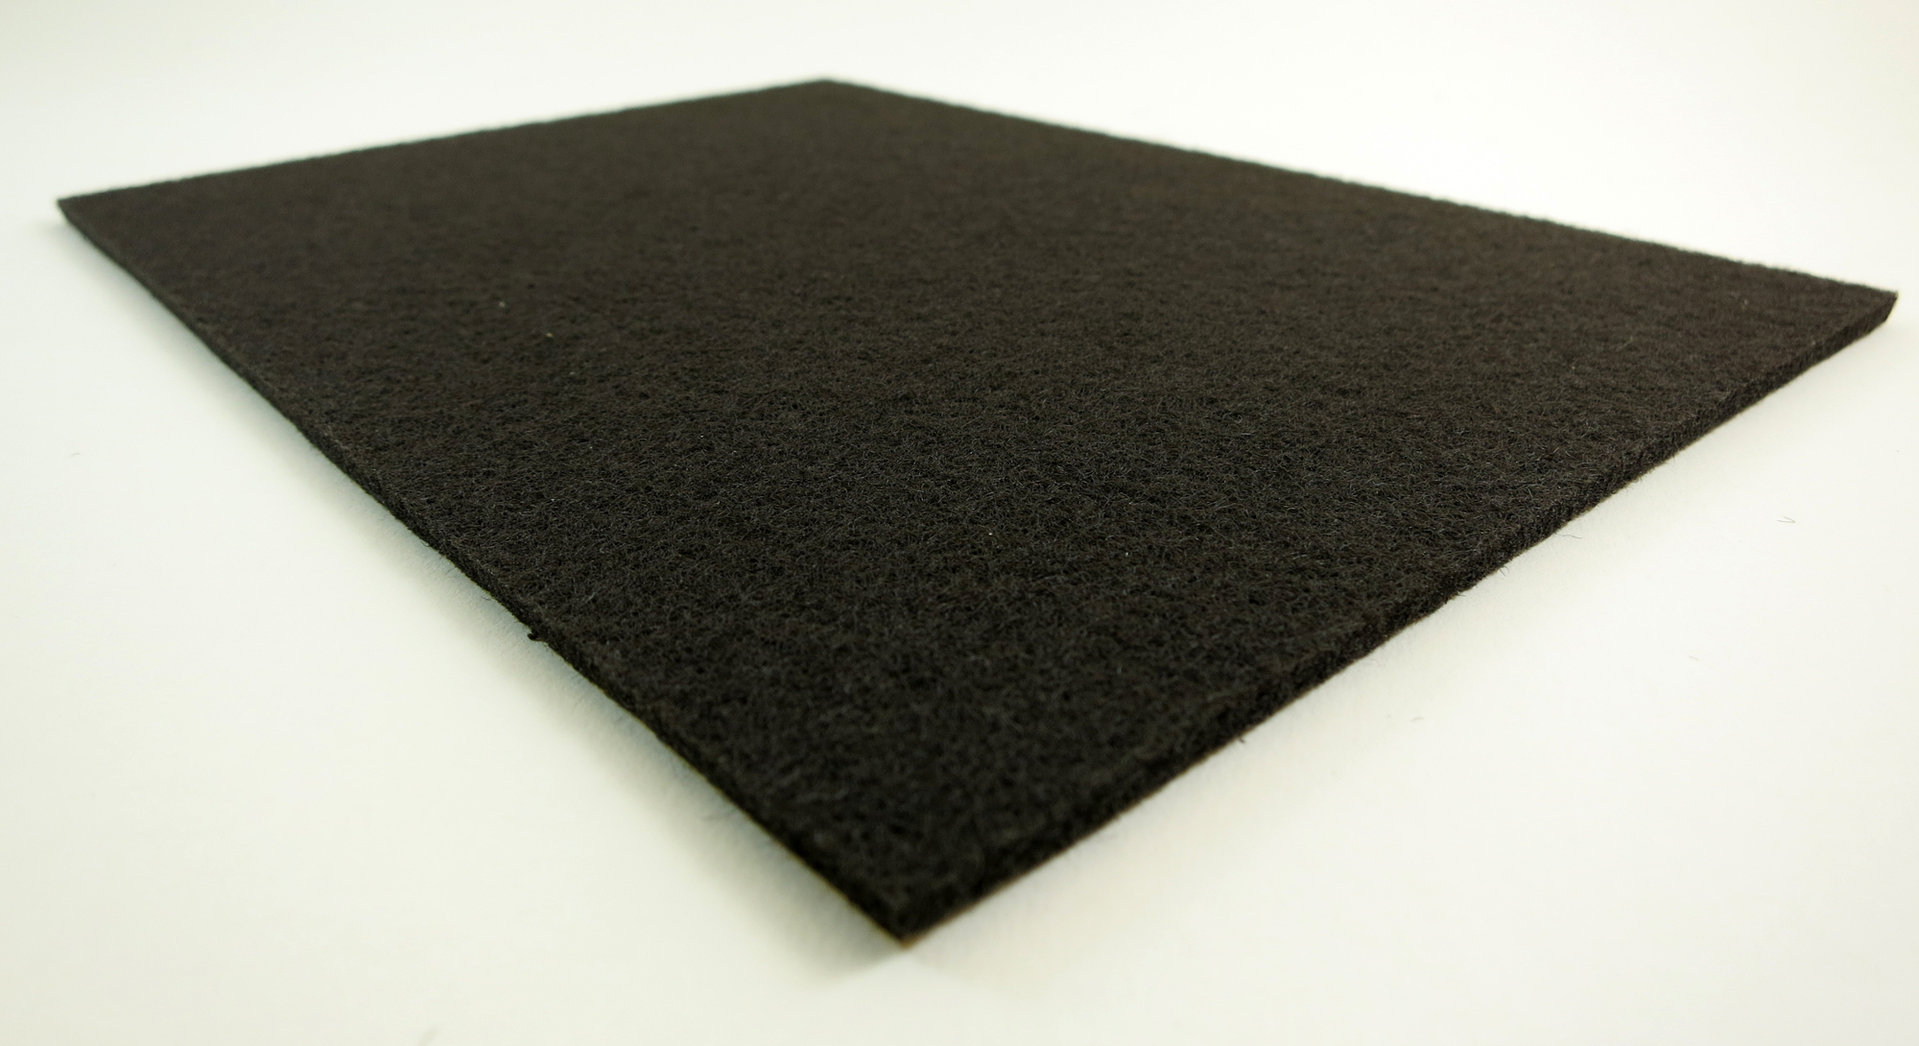 Filzplatte quadratisch ab 5x5cm, 3mm dick | selbstklebend | schwarz, anthrazit, braun, weiß